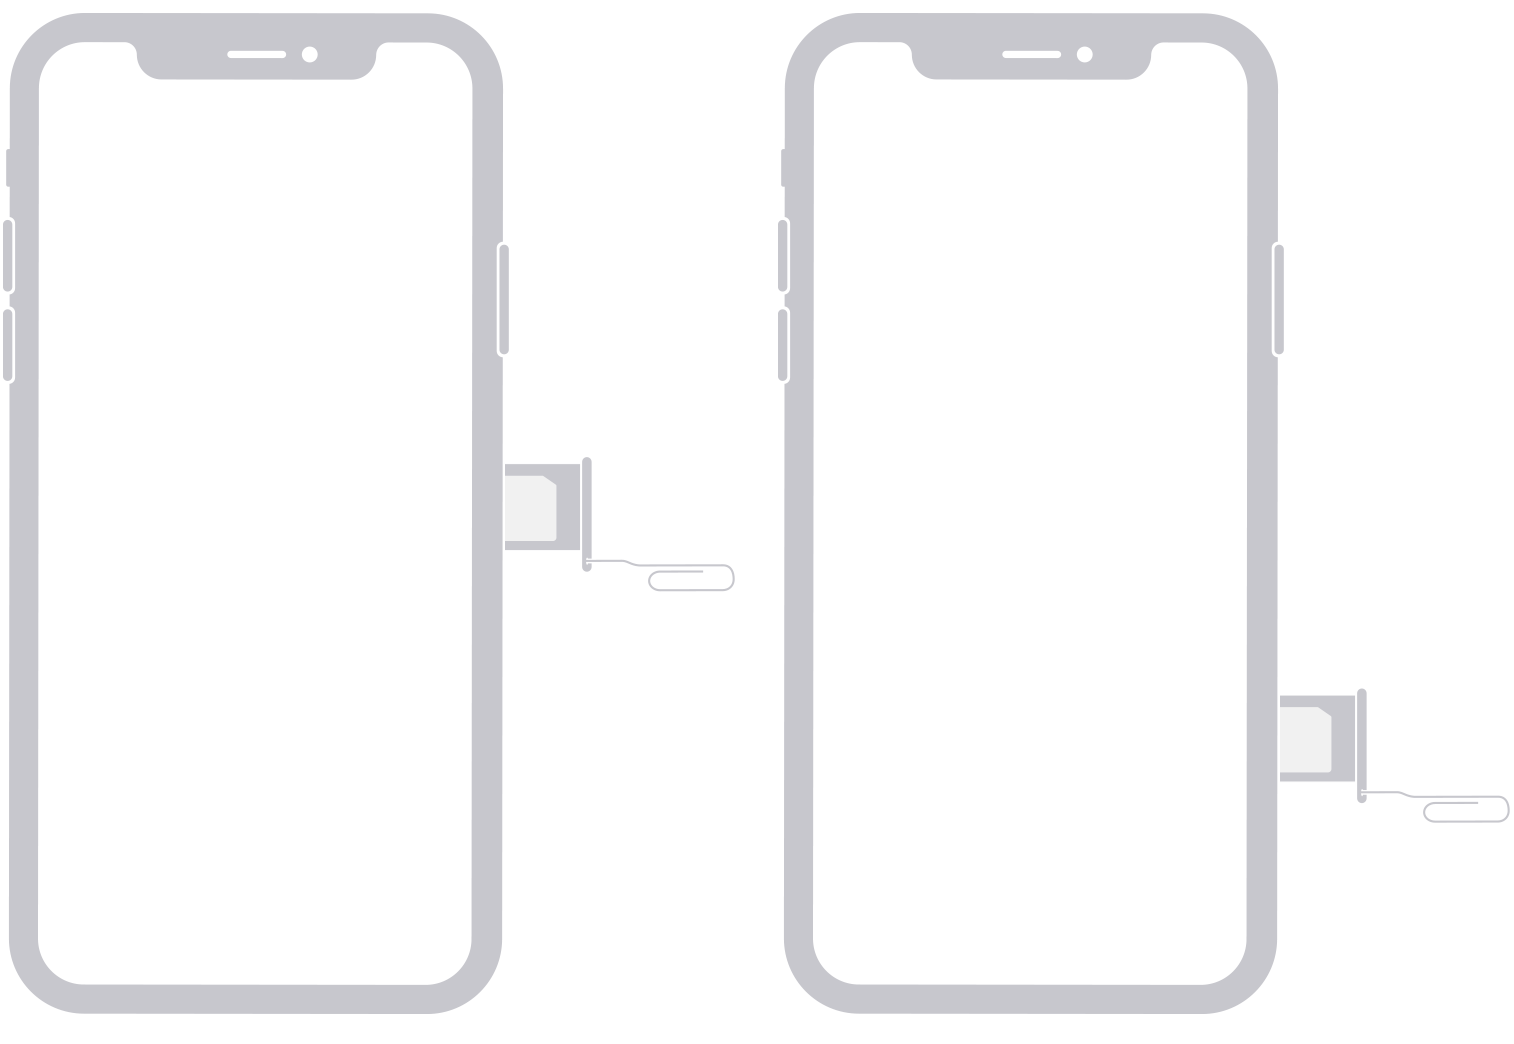 Resimde, iPhone'un sağ tarafında yer alan SIM gösterilmektedir